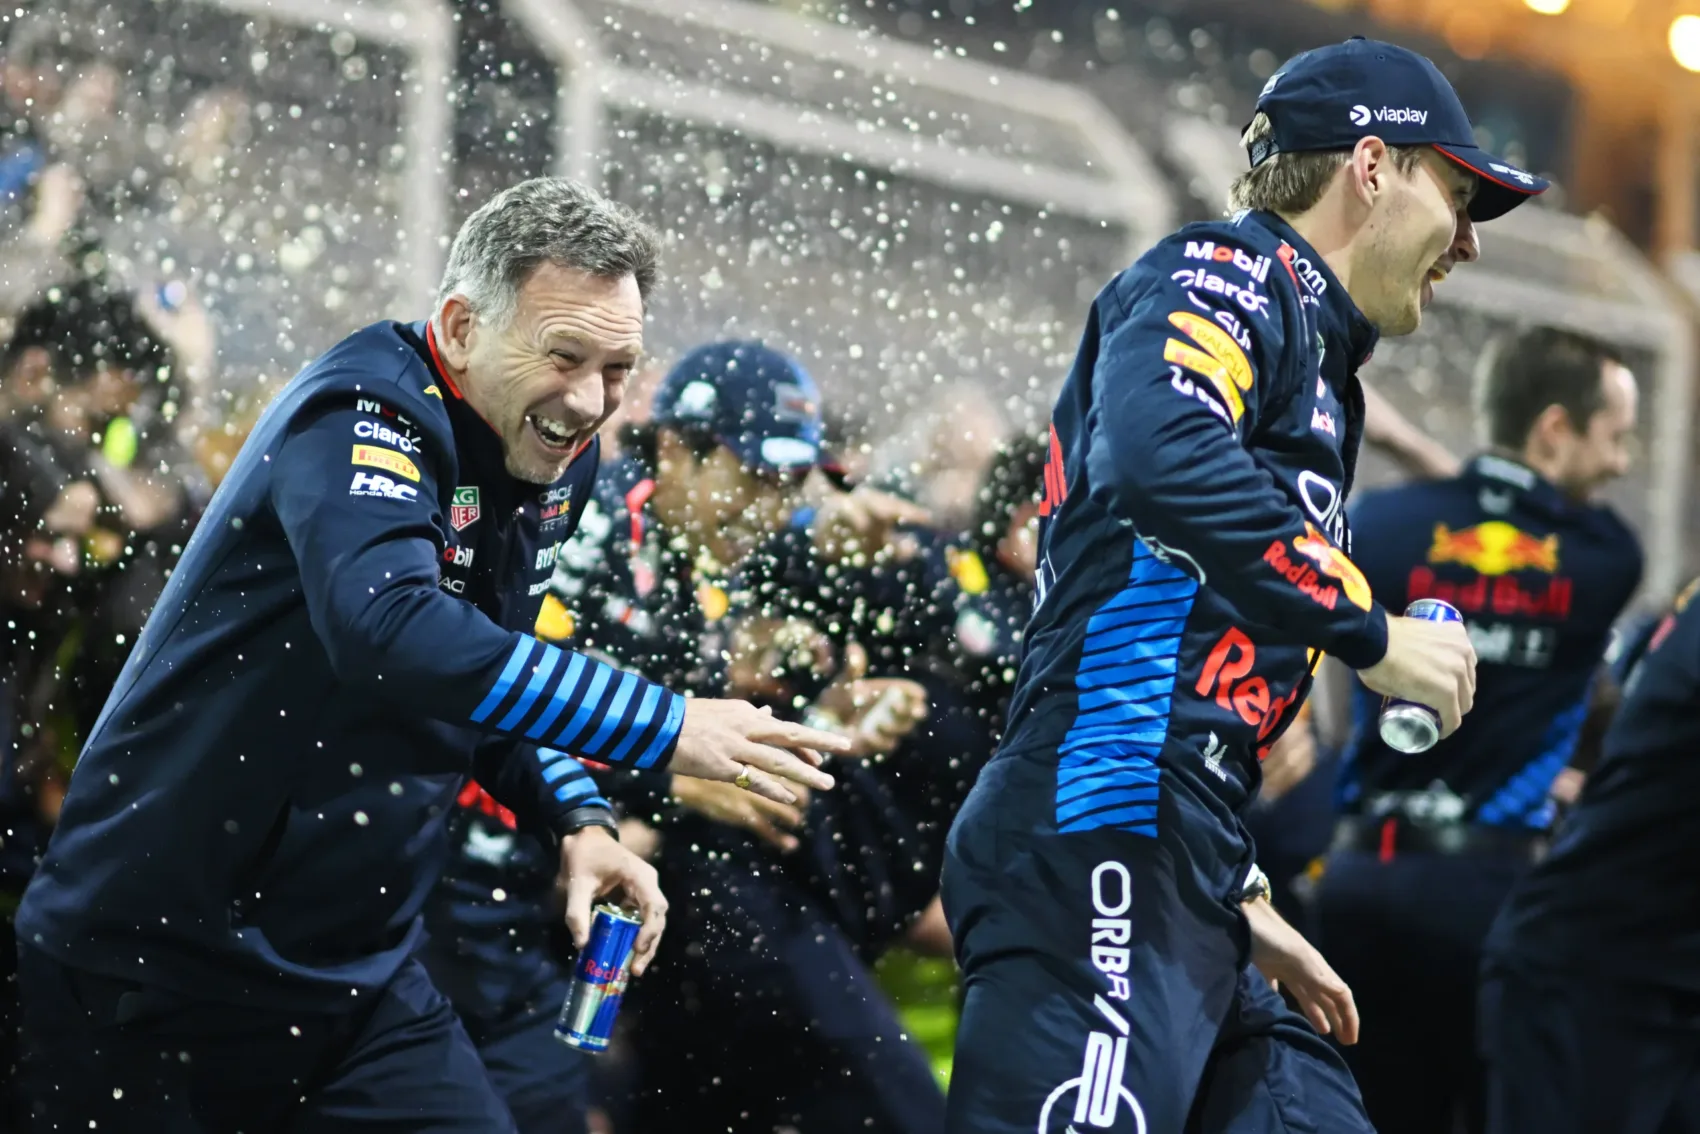 Megtörhet-e Verstappen Red Bullba vetett bizalma a Horner-ügy miatt?